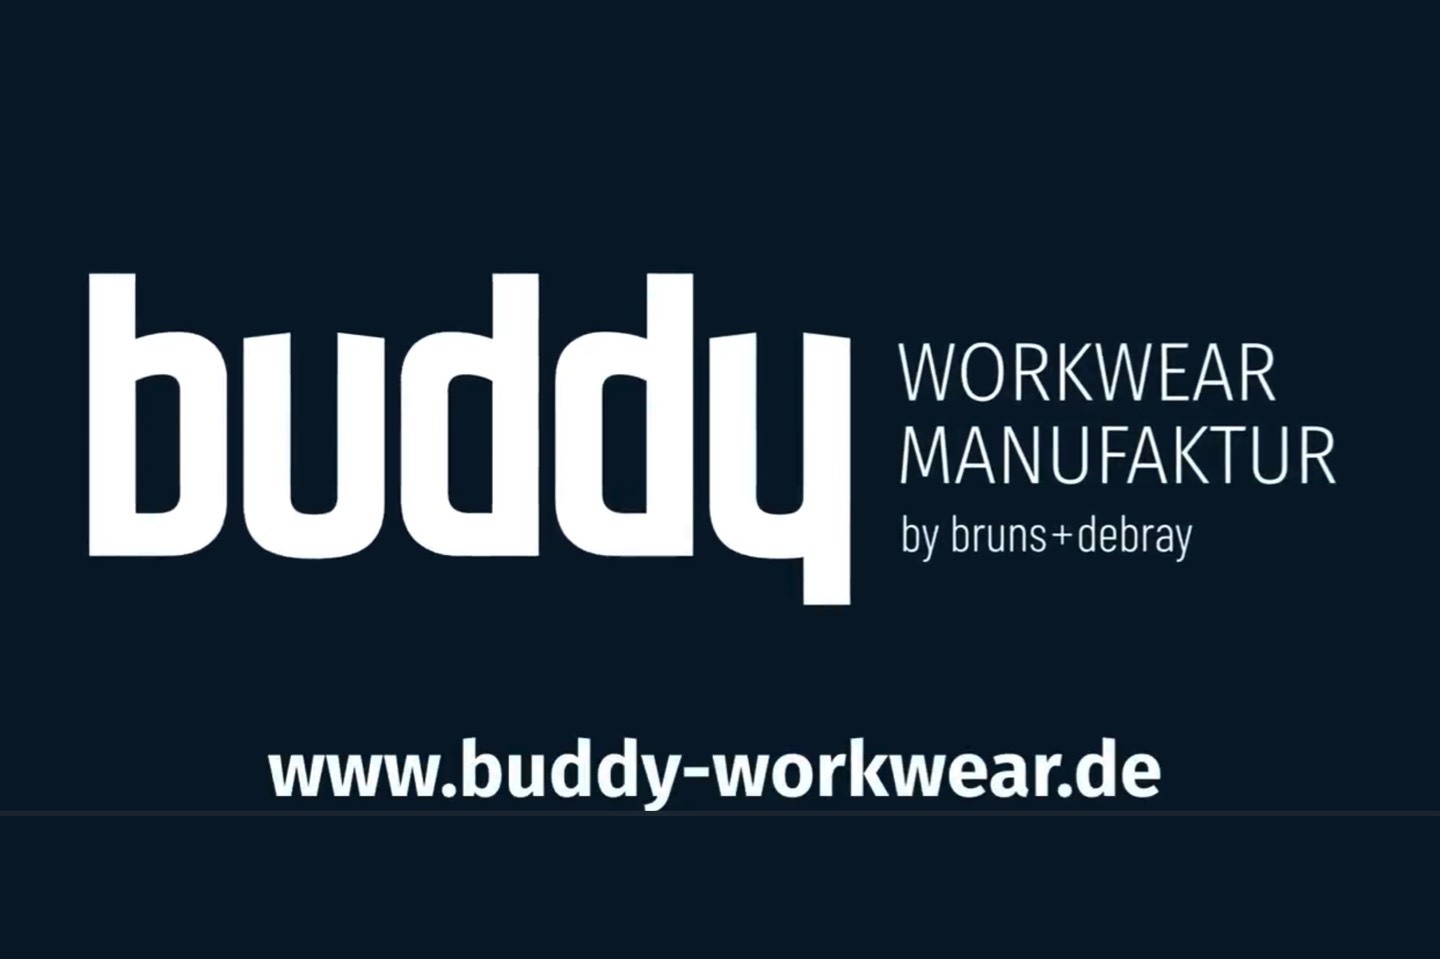 buddy workwear manufacture,Warendorf,Berufsbekleidung,